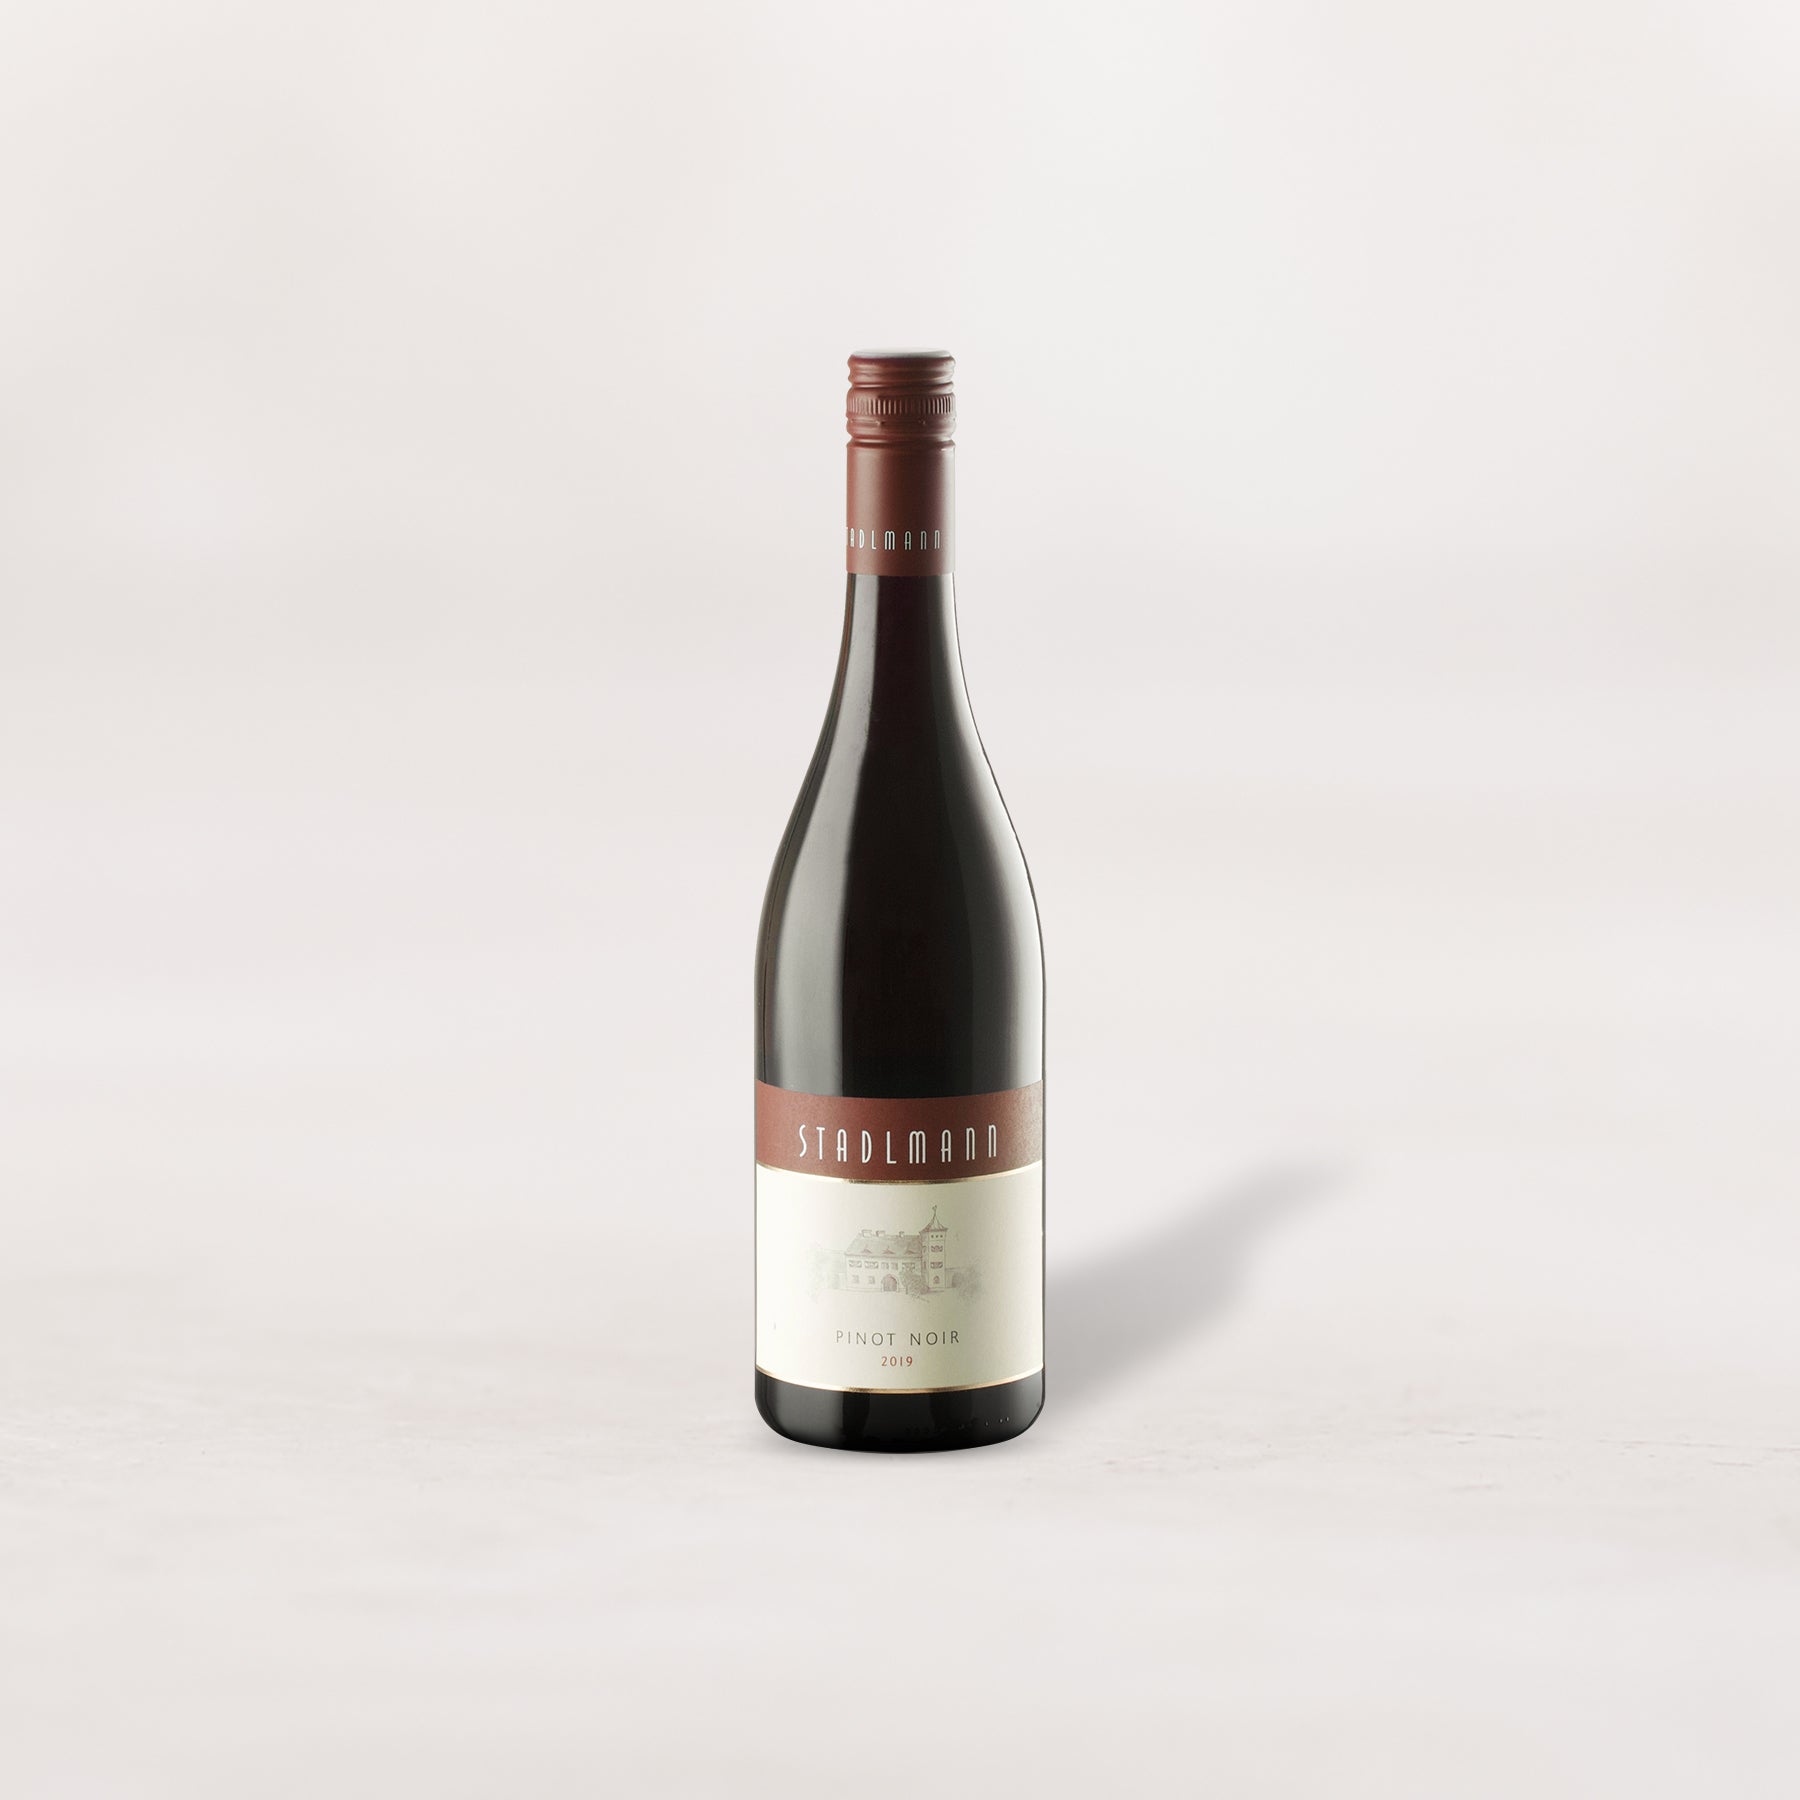 2019 Weingut Stadlmann, Pinot Noir "Classic"